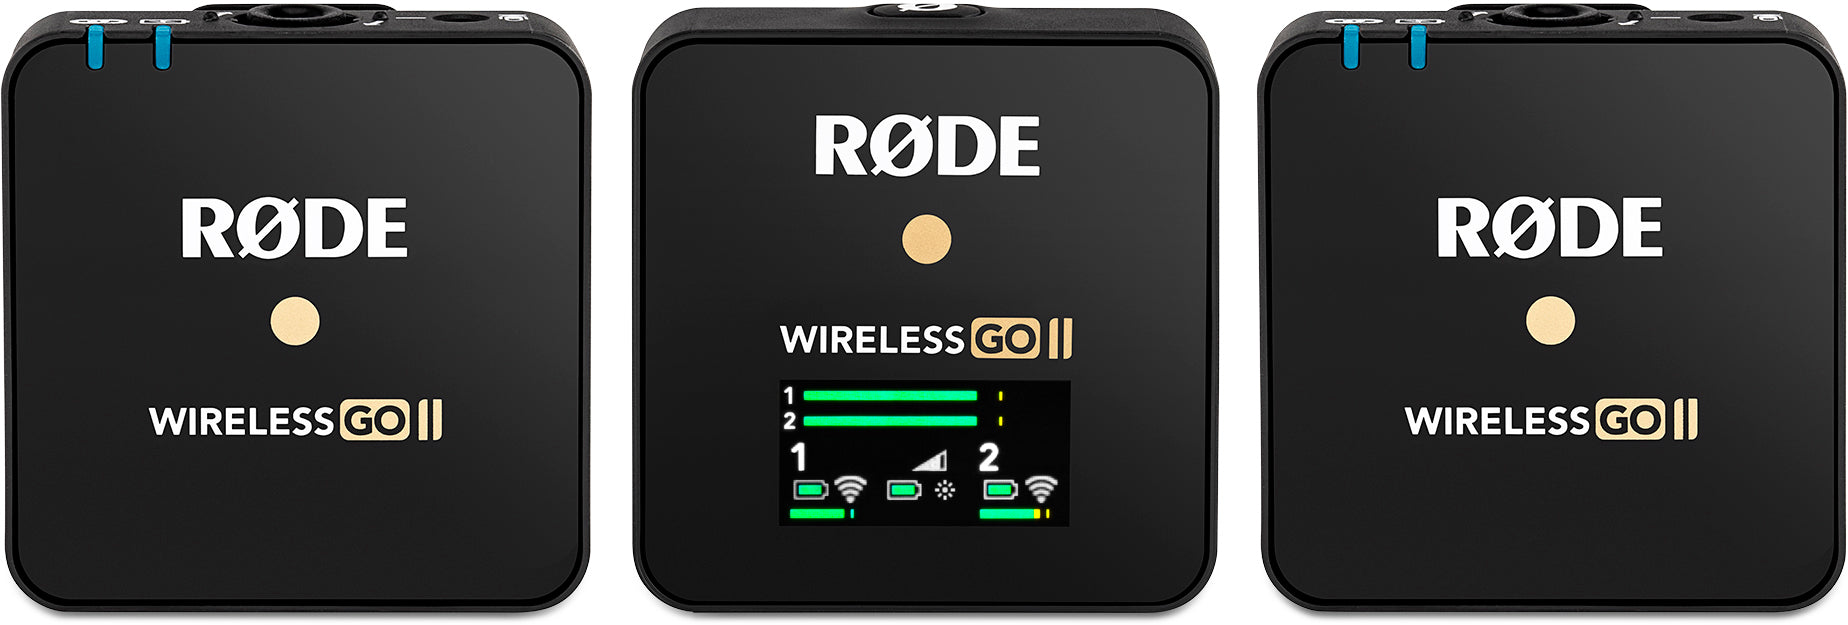 RODE Wireless GO II Dual Channel